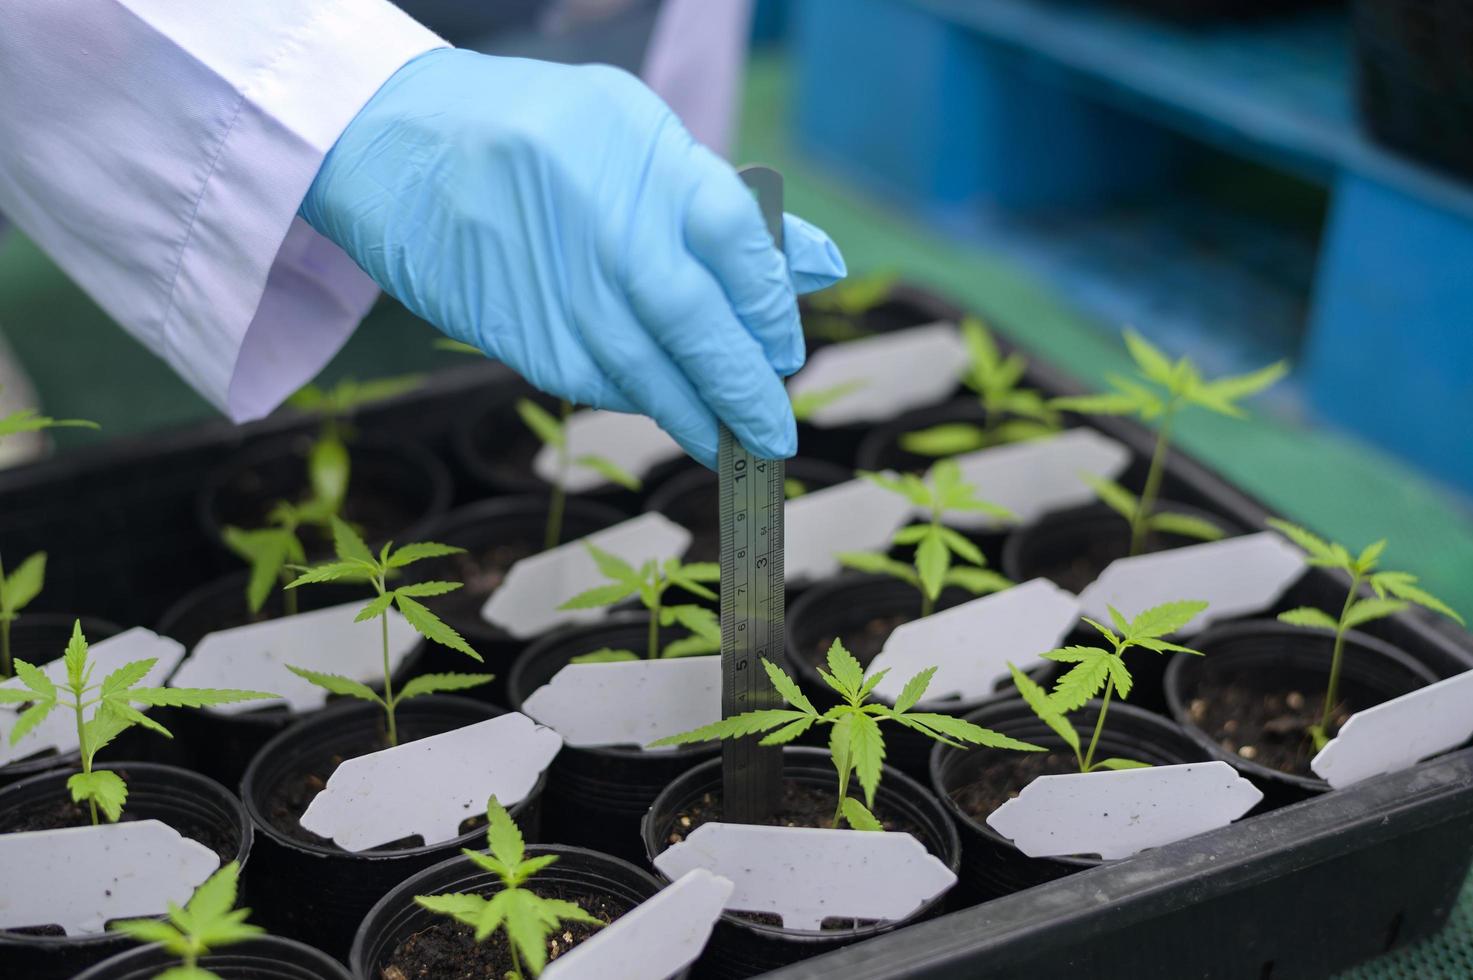 ein Wissenschaftler, der ein Lineal verwendet, um Daten über Cannabis-Setzlinge in legalisierten Farmen zu sammeln und zu analysieren. foto